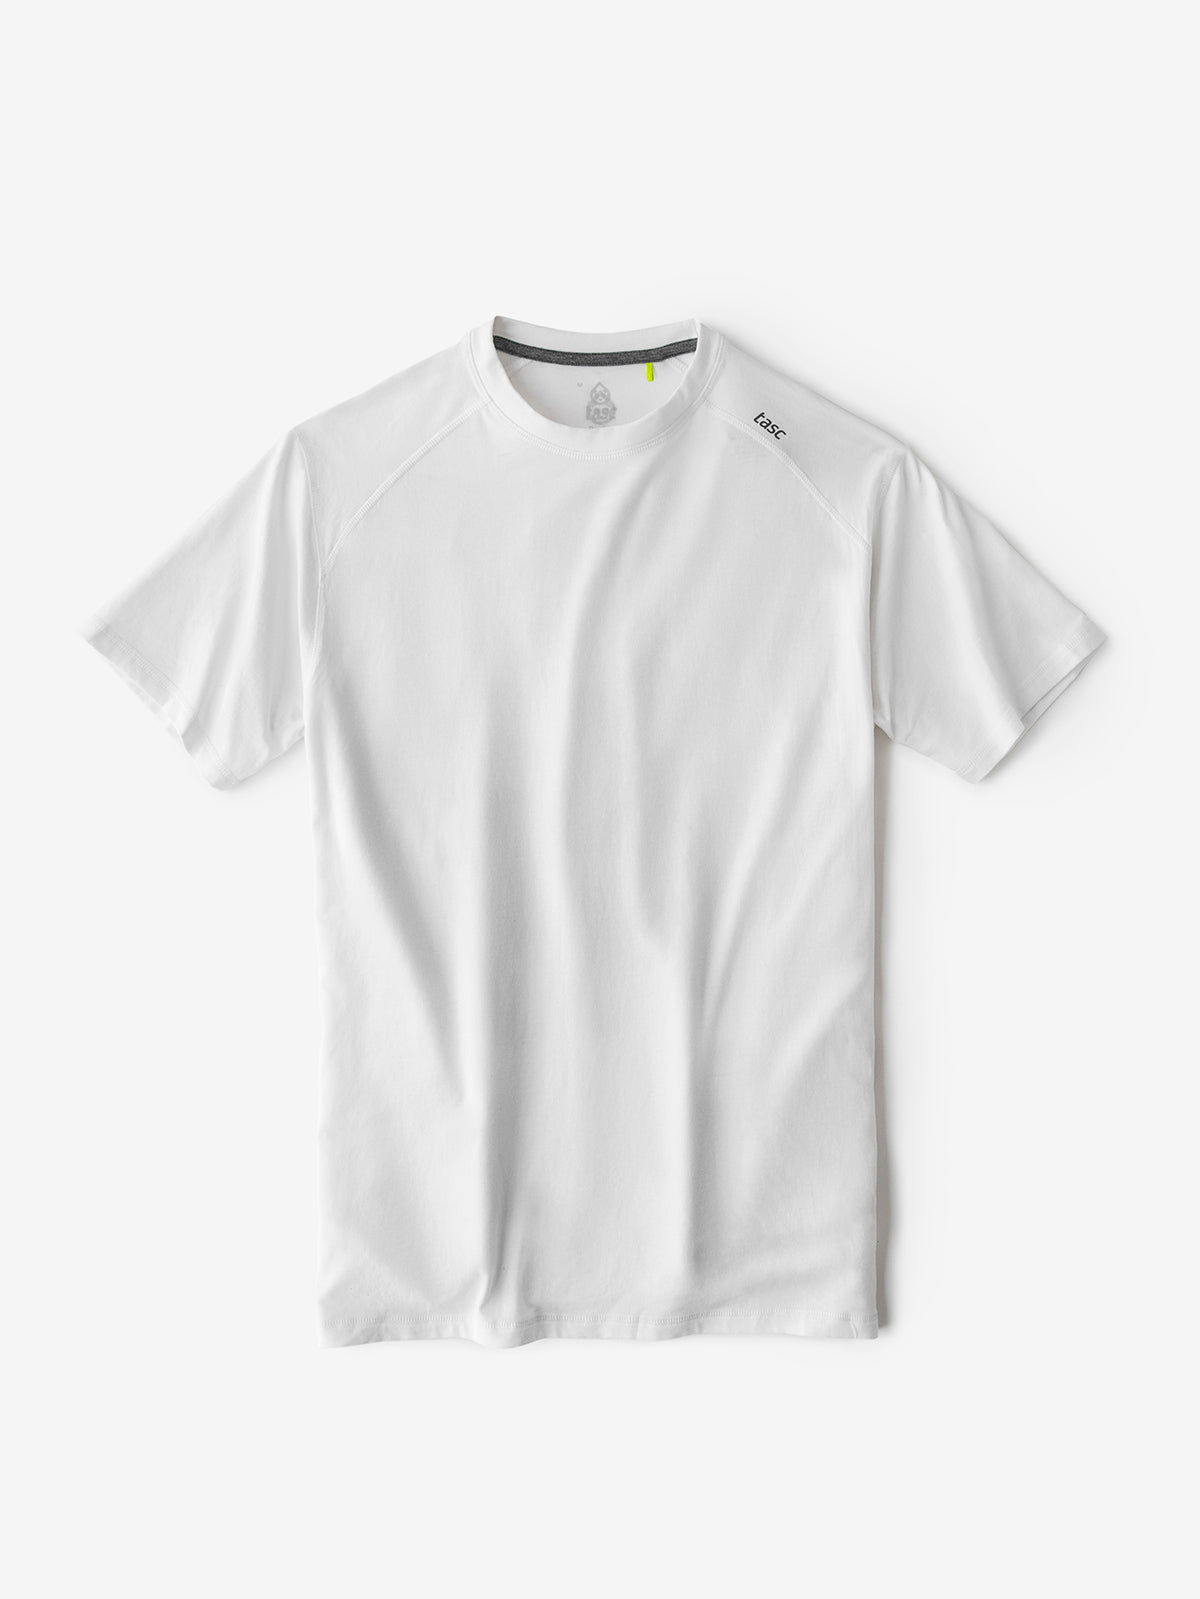 Tasc Men's Carrollton Fitness T-Shirt Apparel Tasc Small White-100 